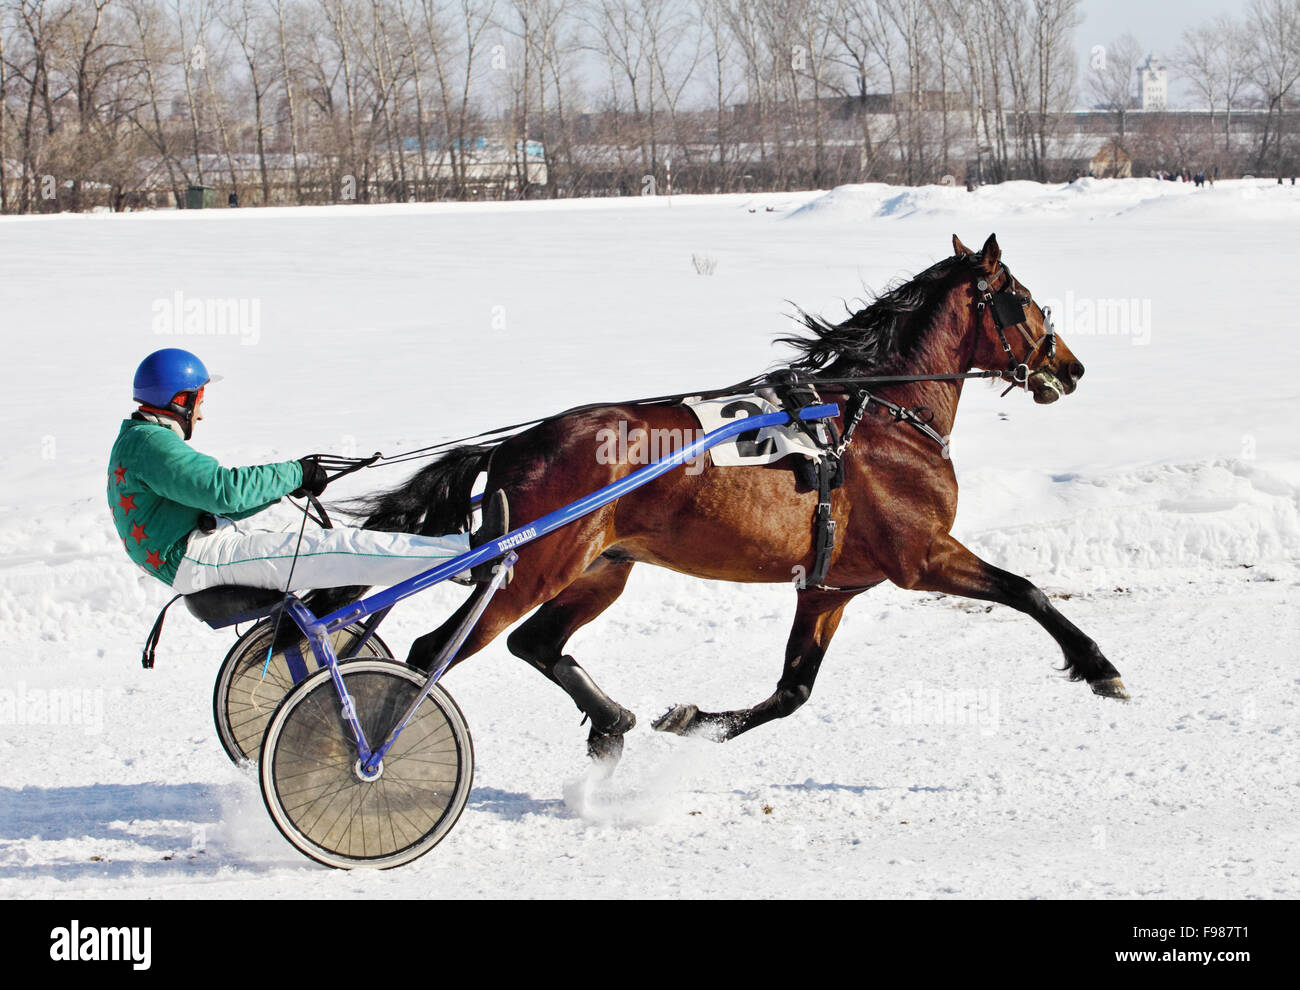 Harness Racing en invierno, trotter carreras de caballos en el hipódromo Foto de stock